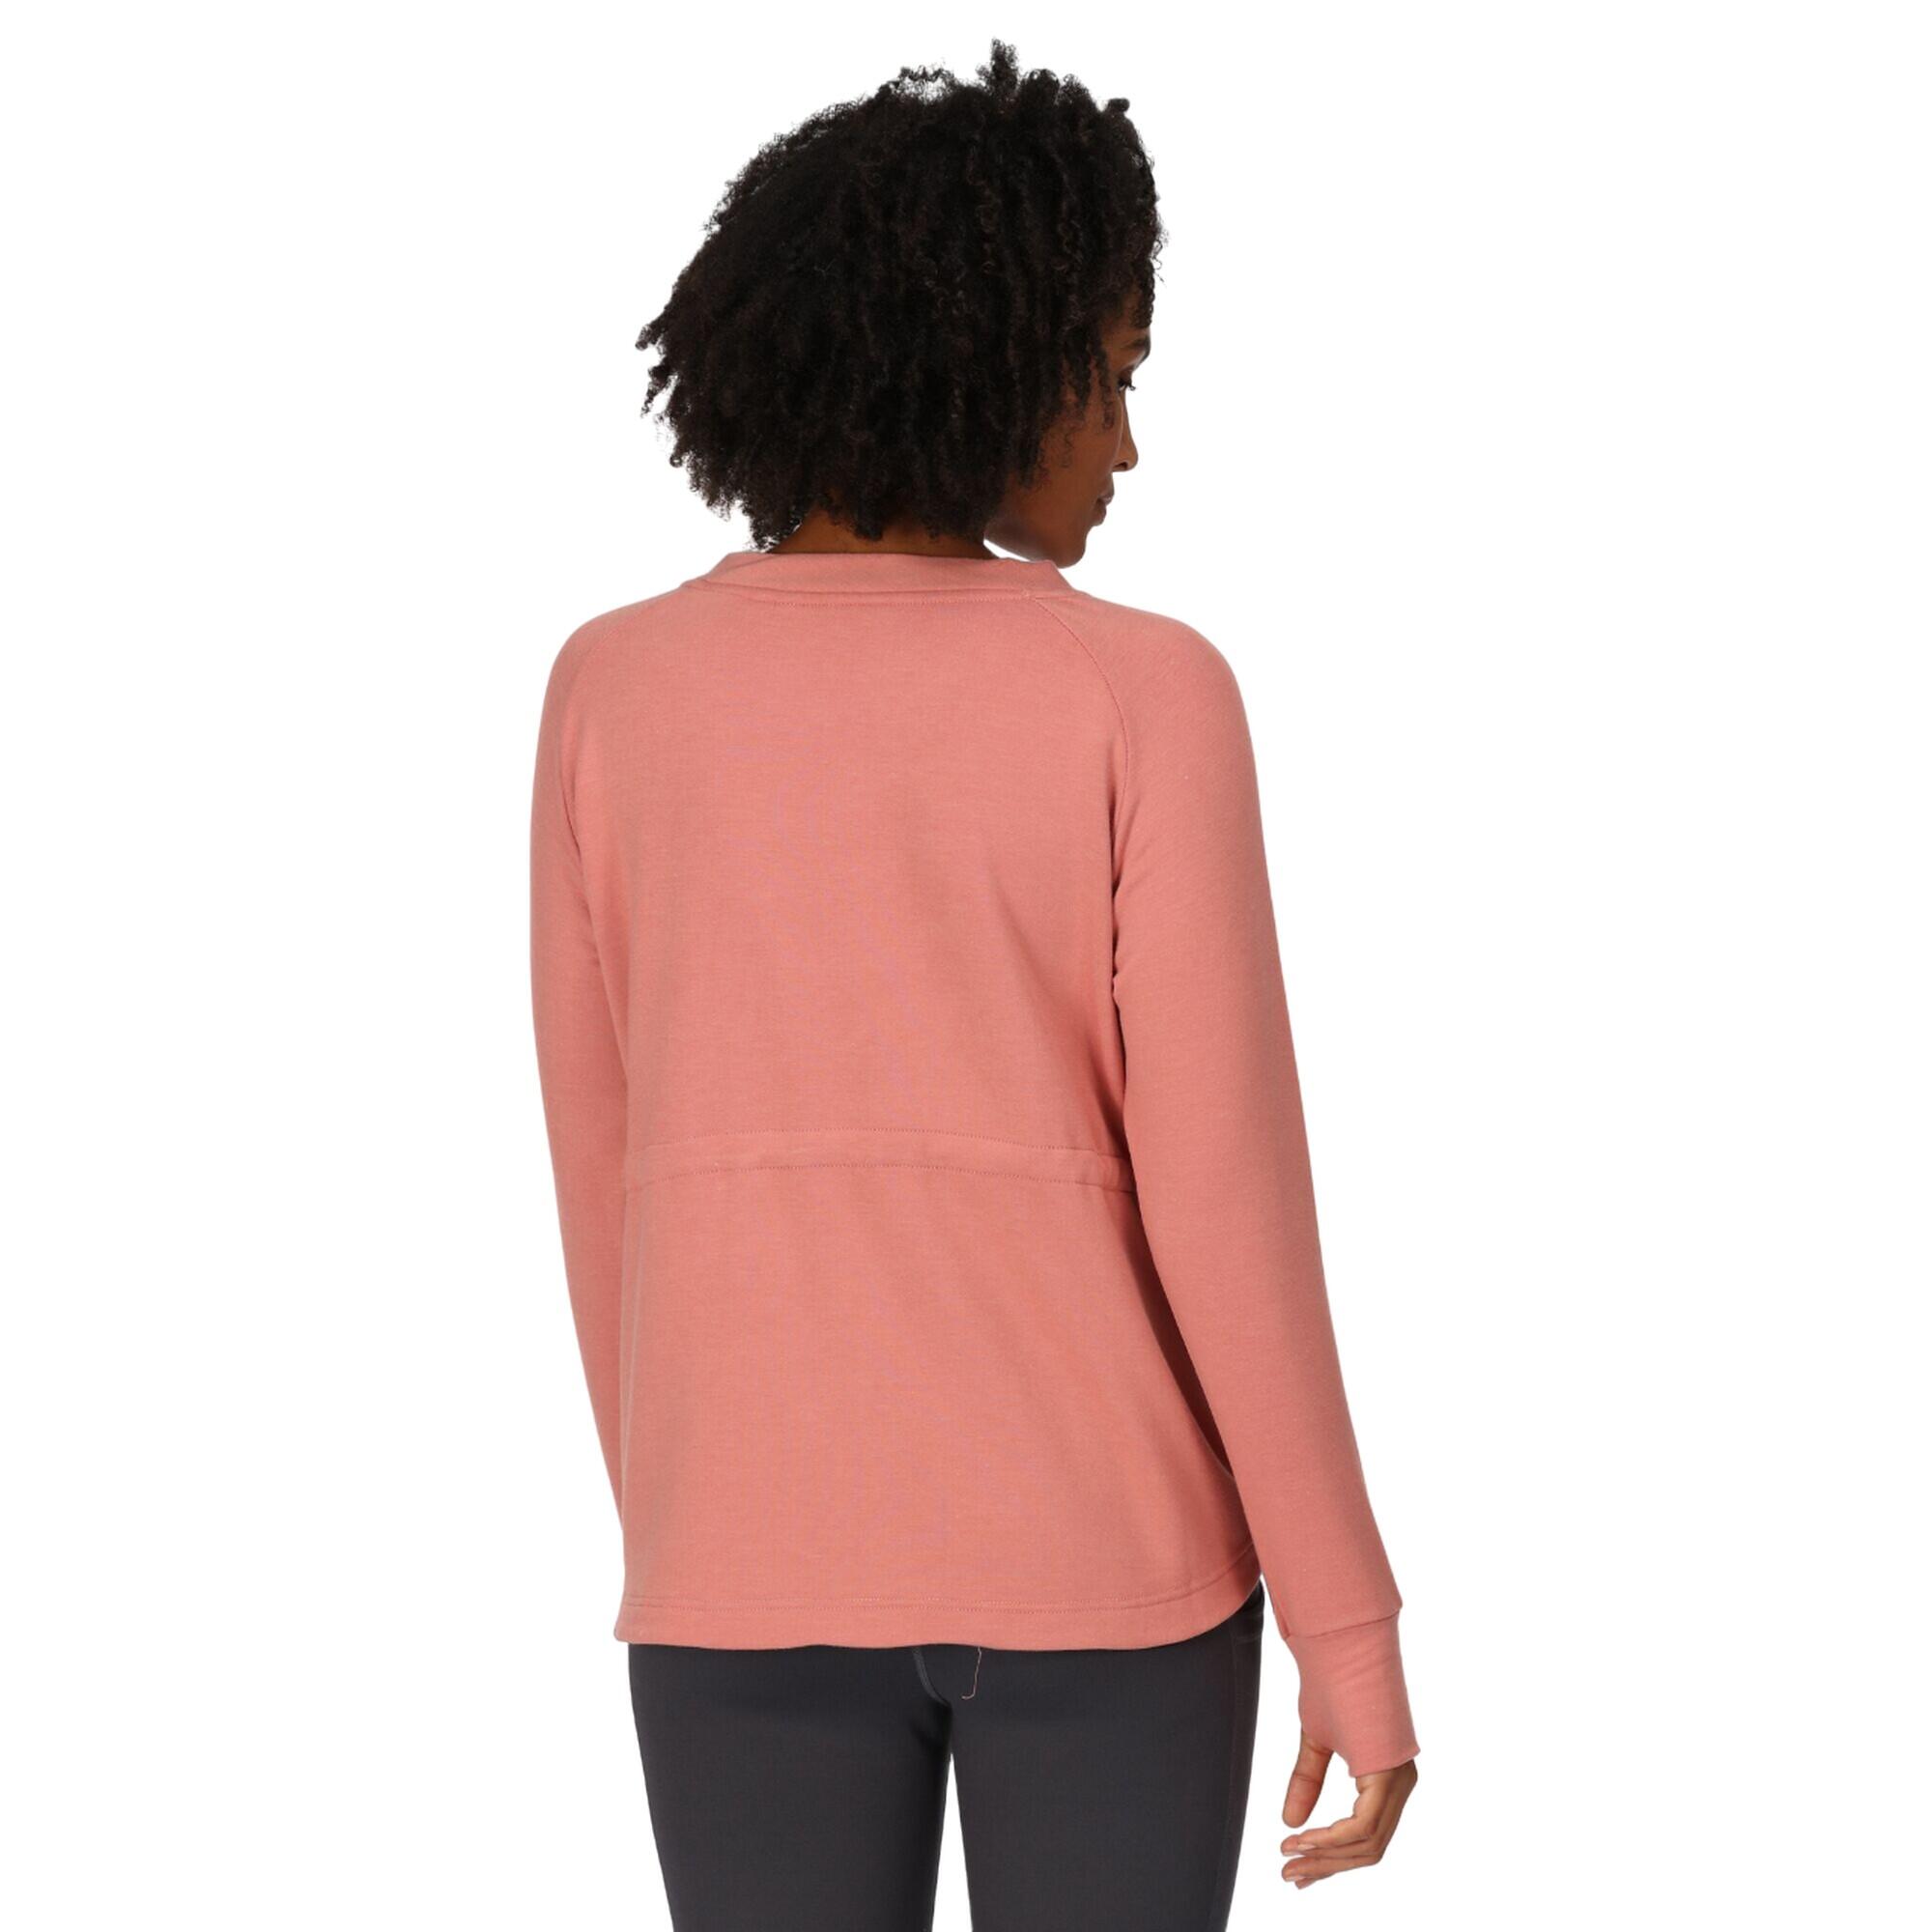 Womens/Ladies Narine Marl Sweatshirt (Terracotta) 4/5